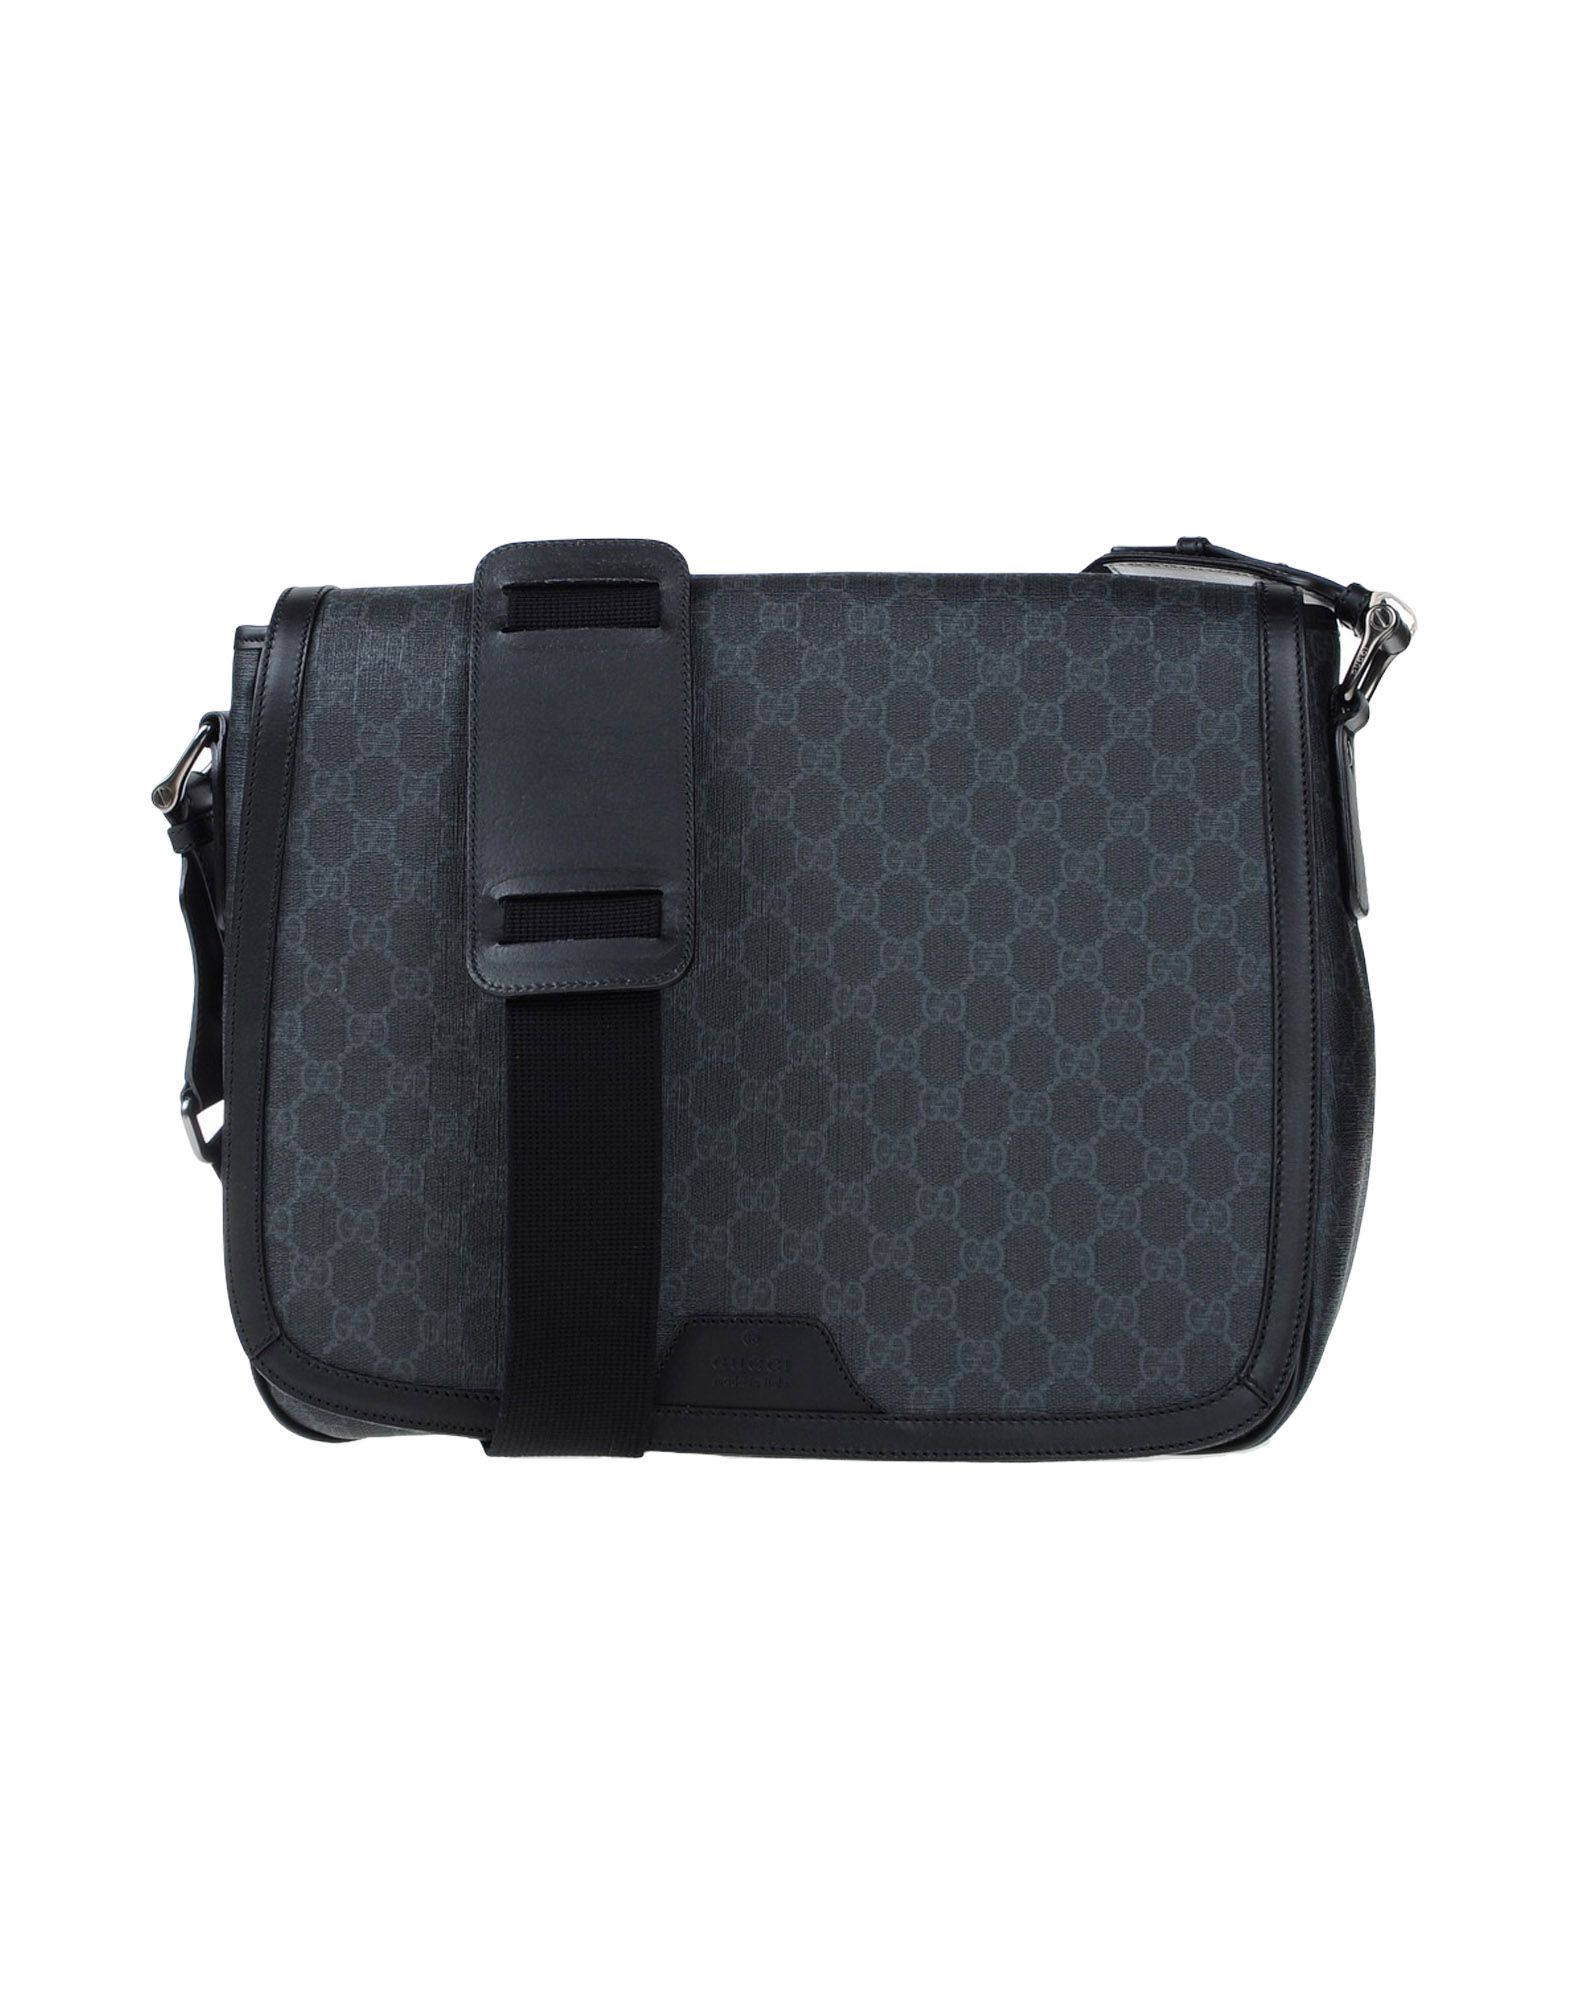 Gucci Purses - Handbags - Satchels - Clutches - Totes - Bags